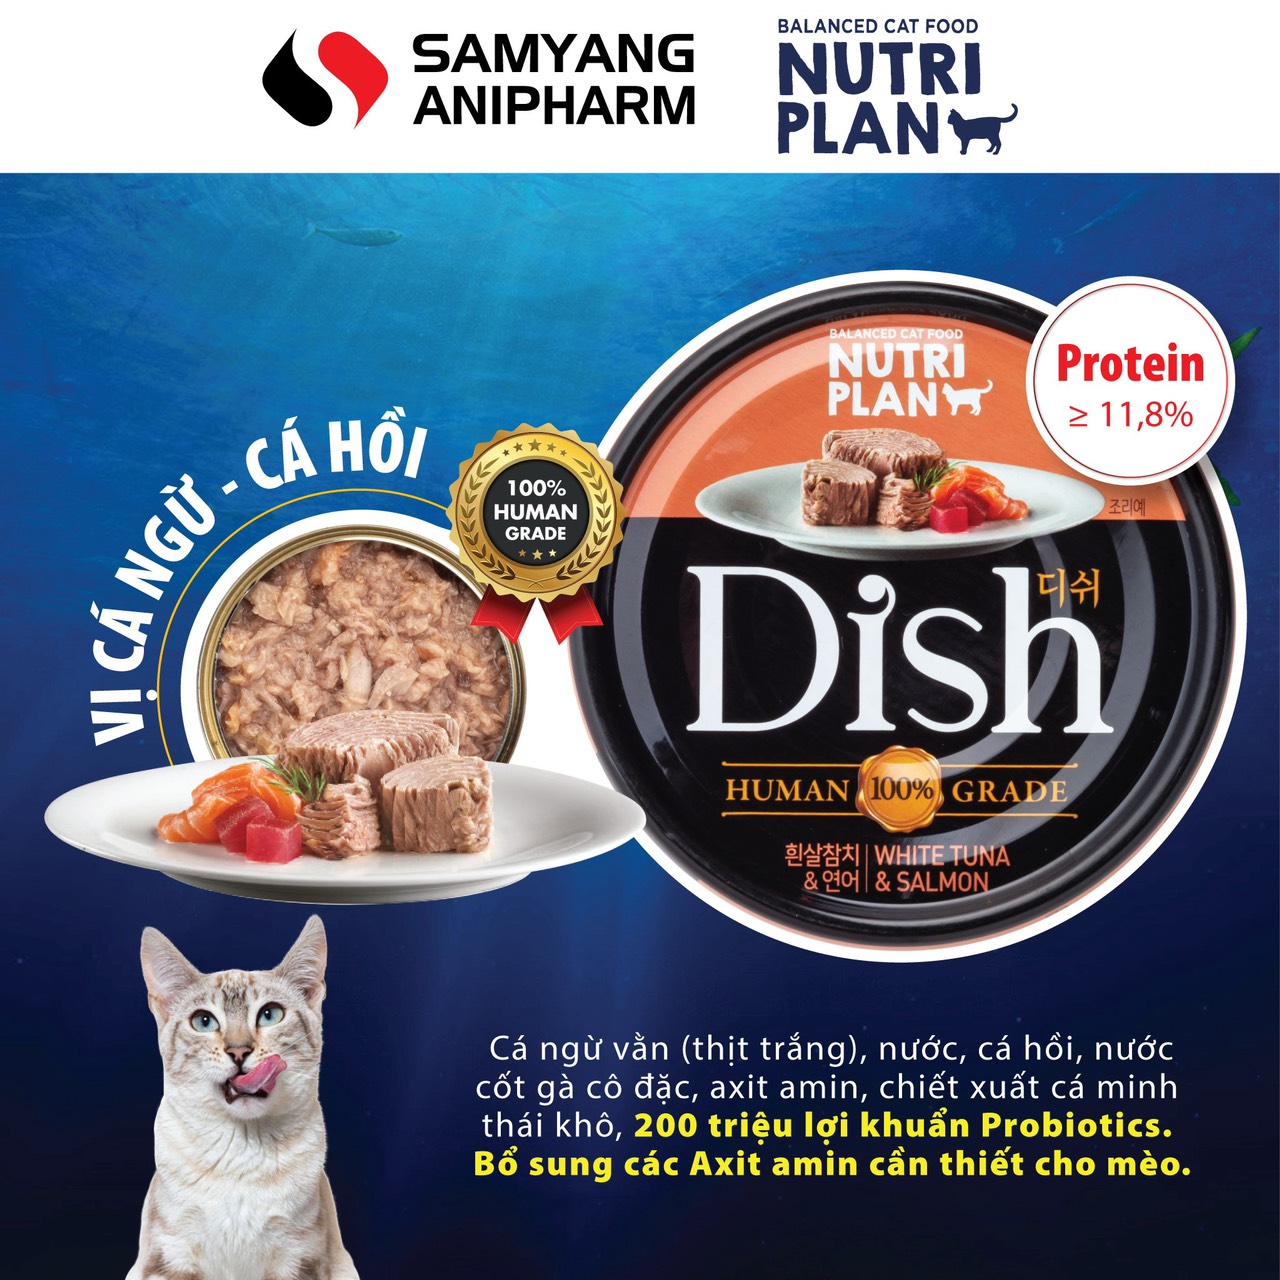 Pate cao cấp cho mèo Nutri Plan Dish 85g nhập khẩu Hàn Quốc